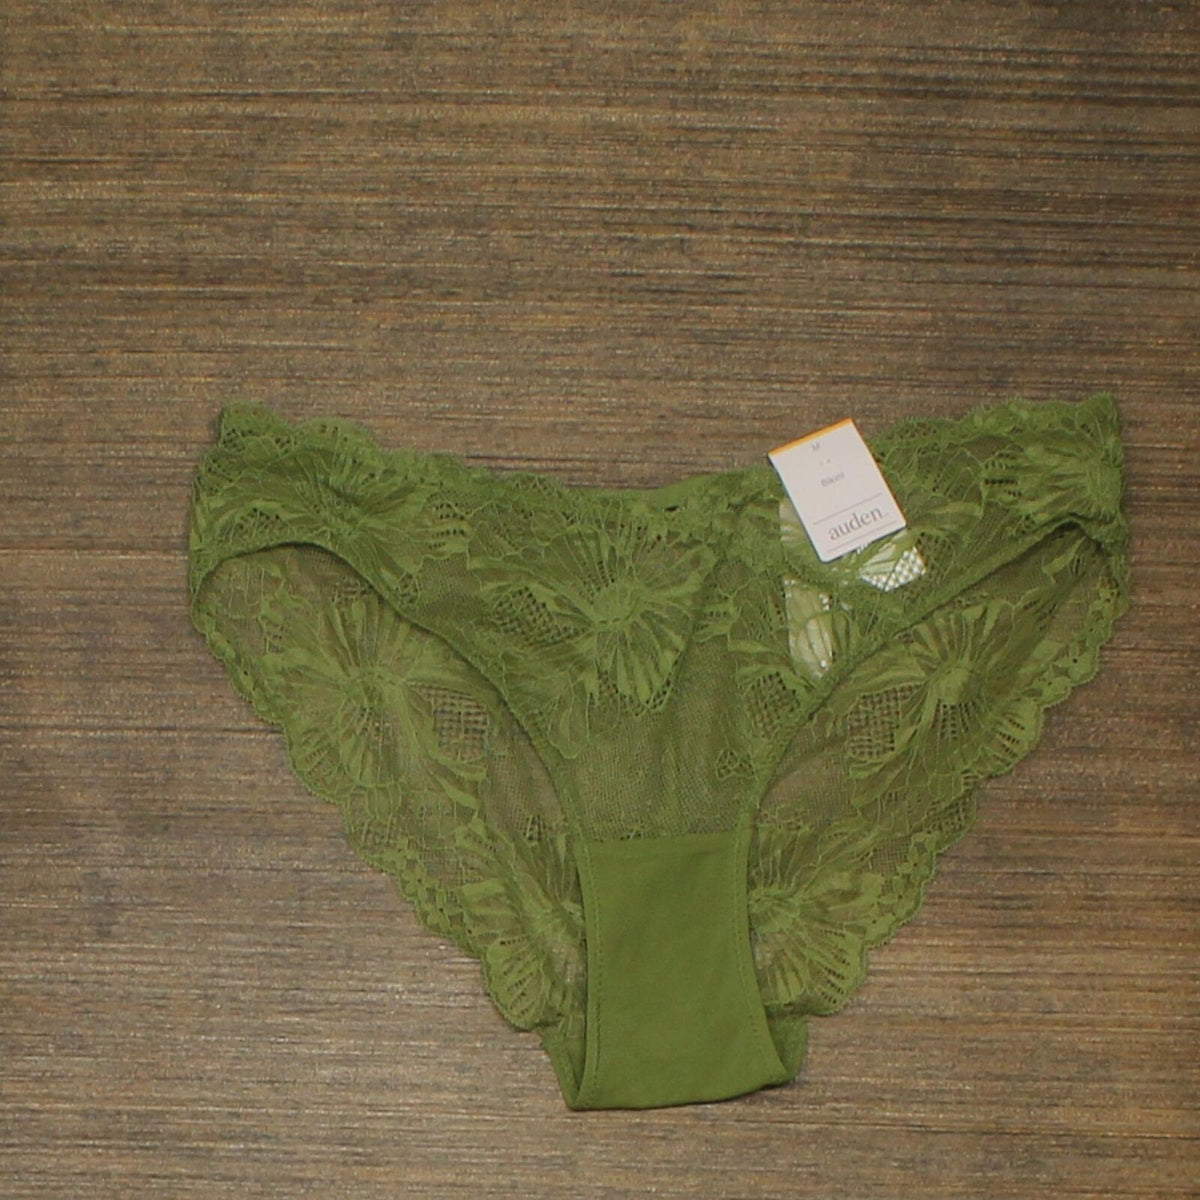 3 NEW Medium Auden Women's Underwear Panties Green Lace Hipster